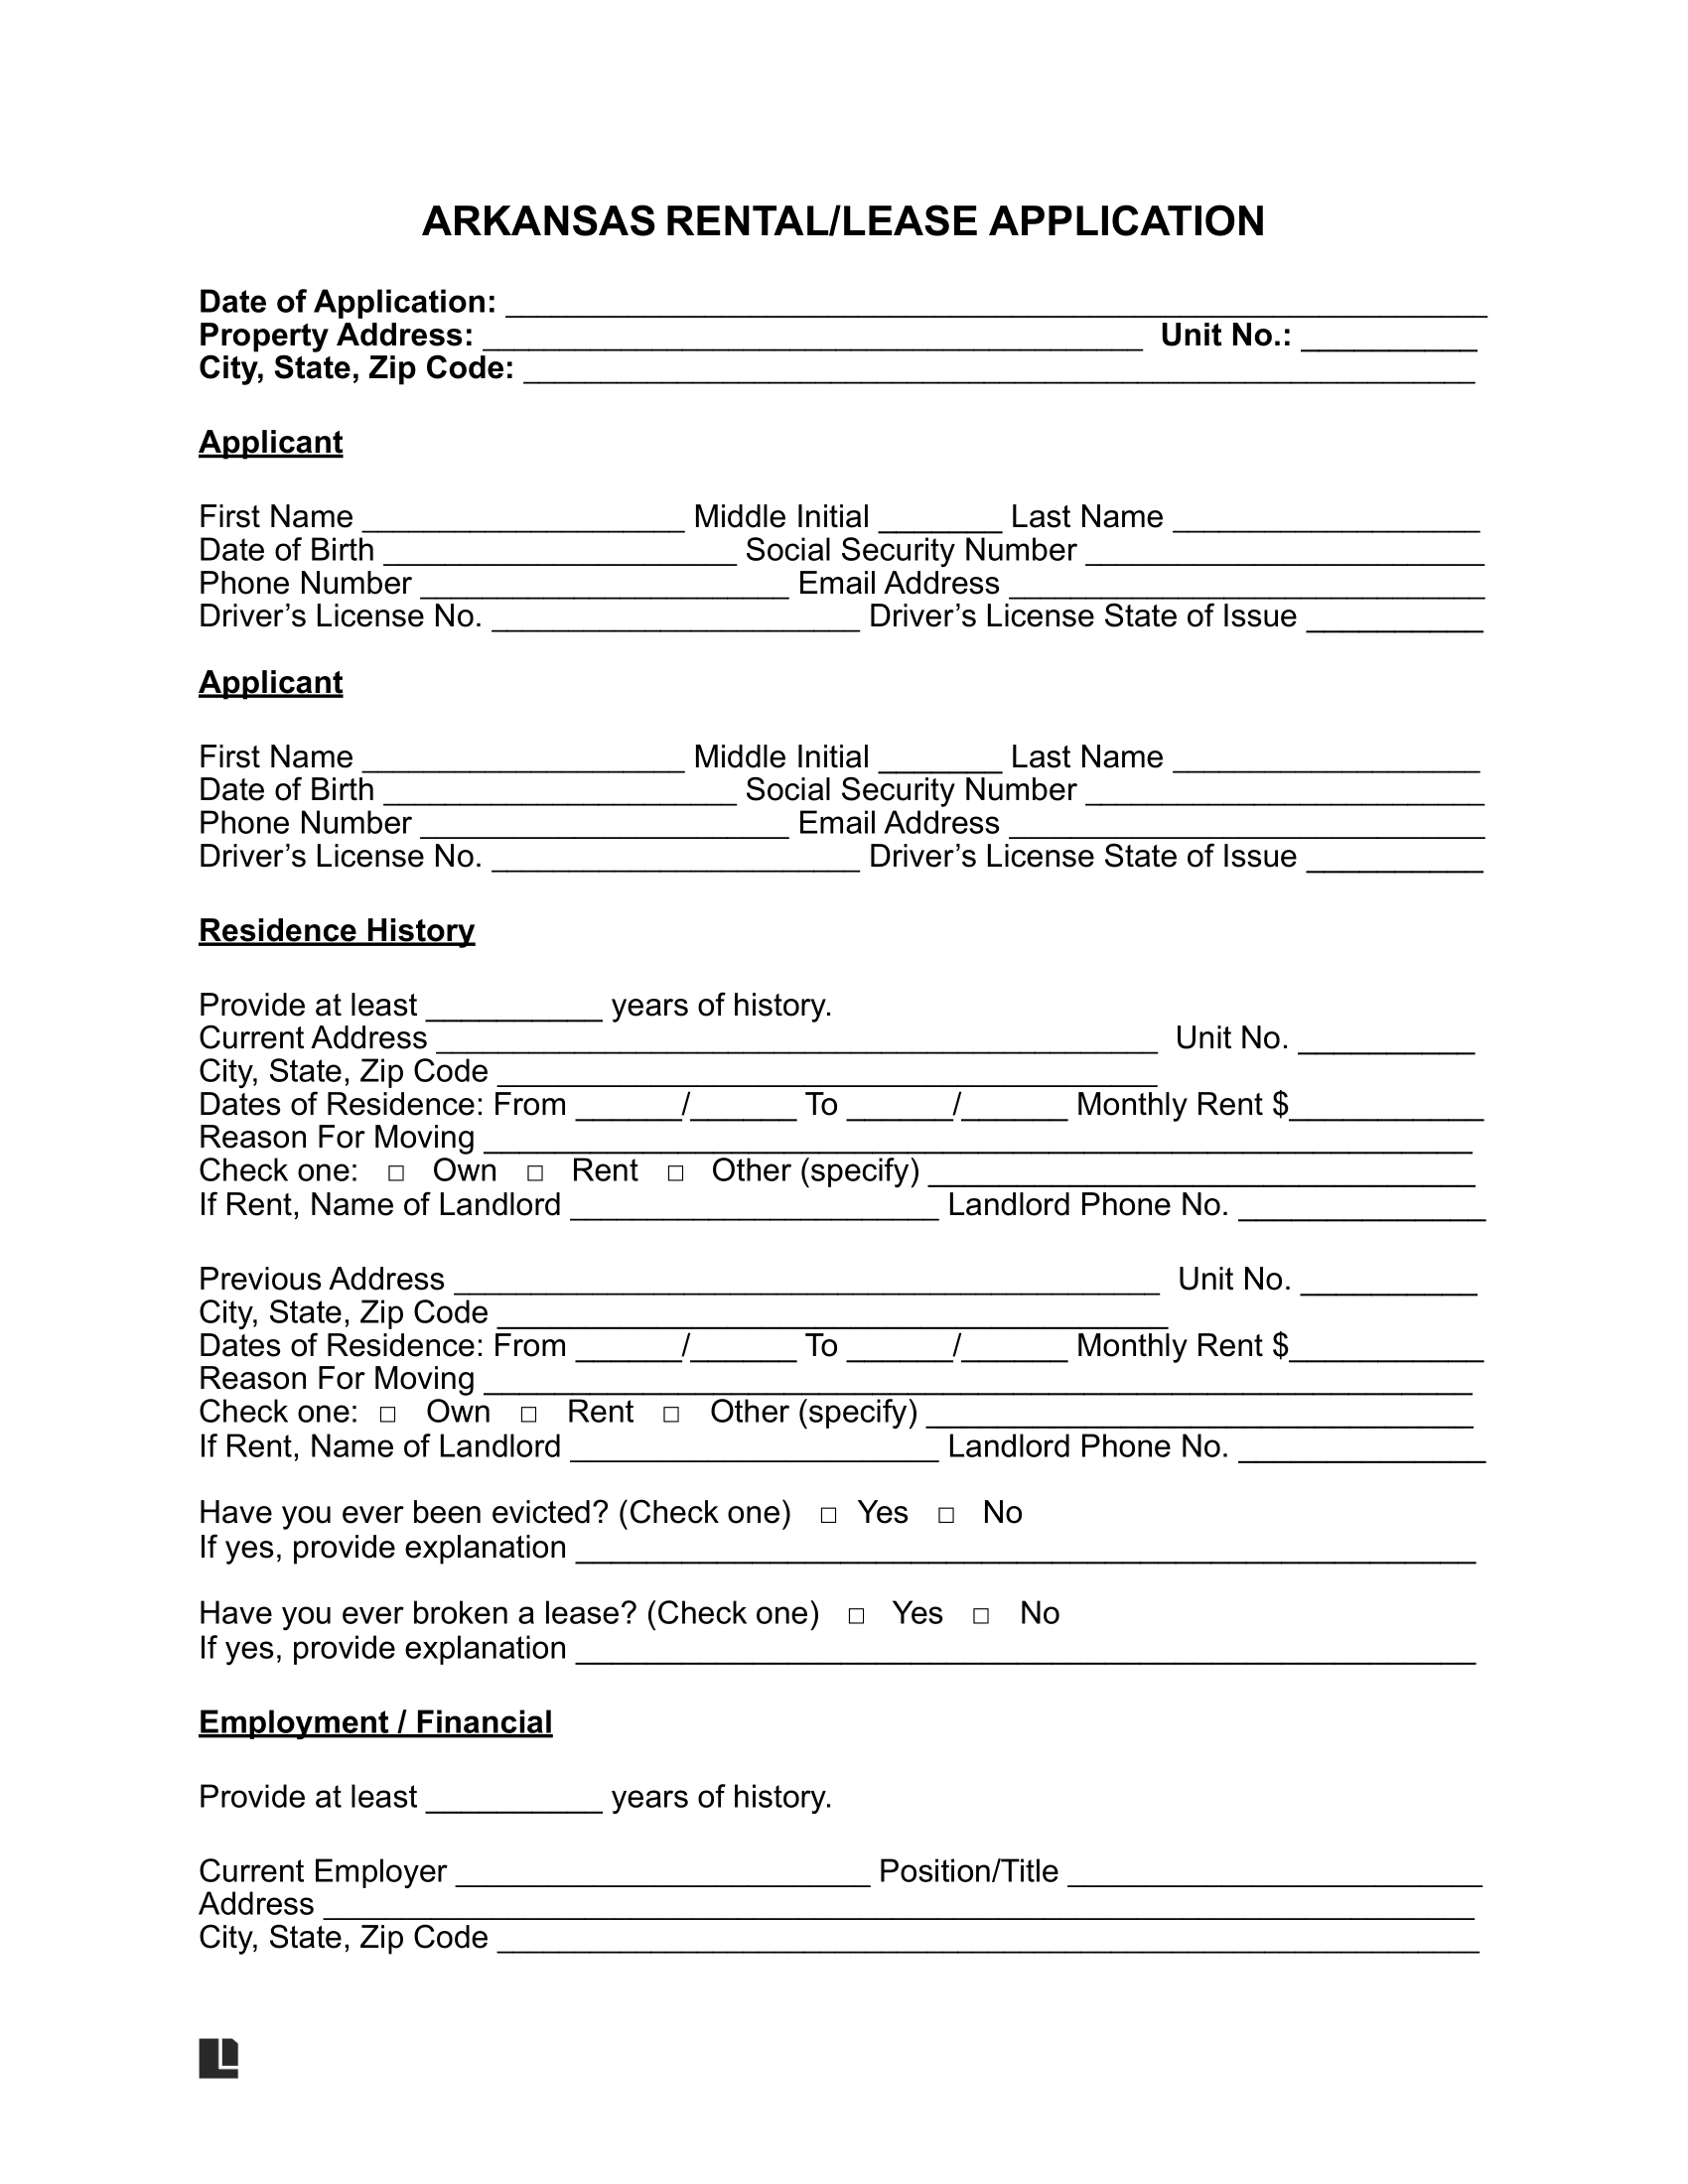 arkansas rental application form